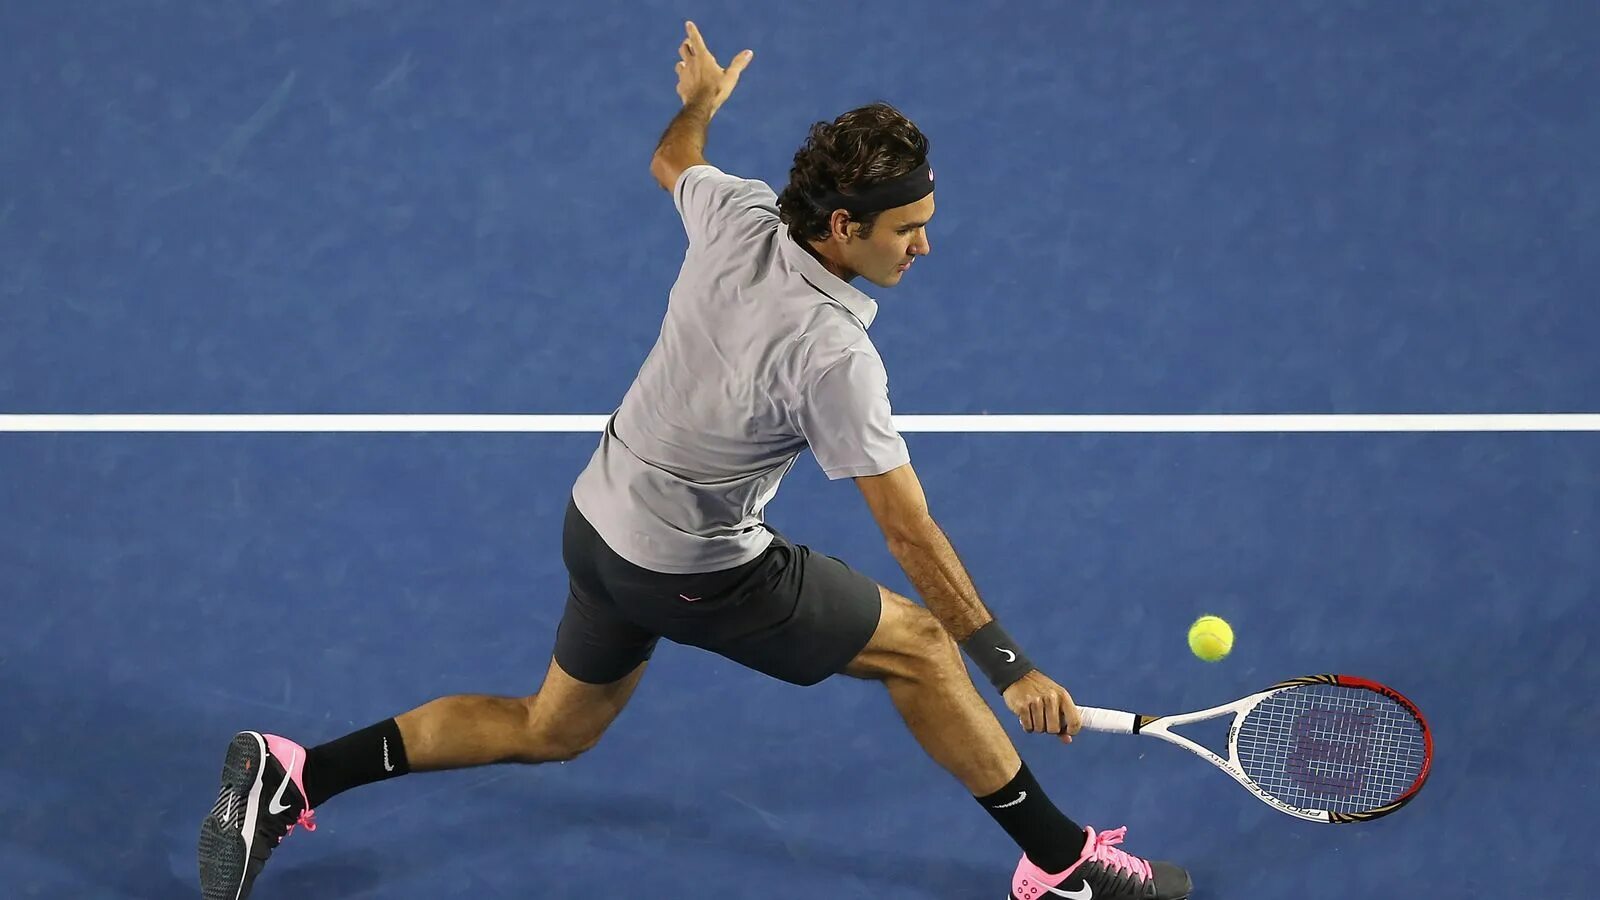 Удар в теннисе 7. Бэкхенд Роджер Федерер. Теннис удары Федерер. Теннисист в прыжке. Теннисист со спины.